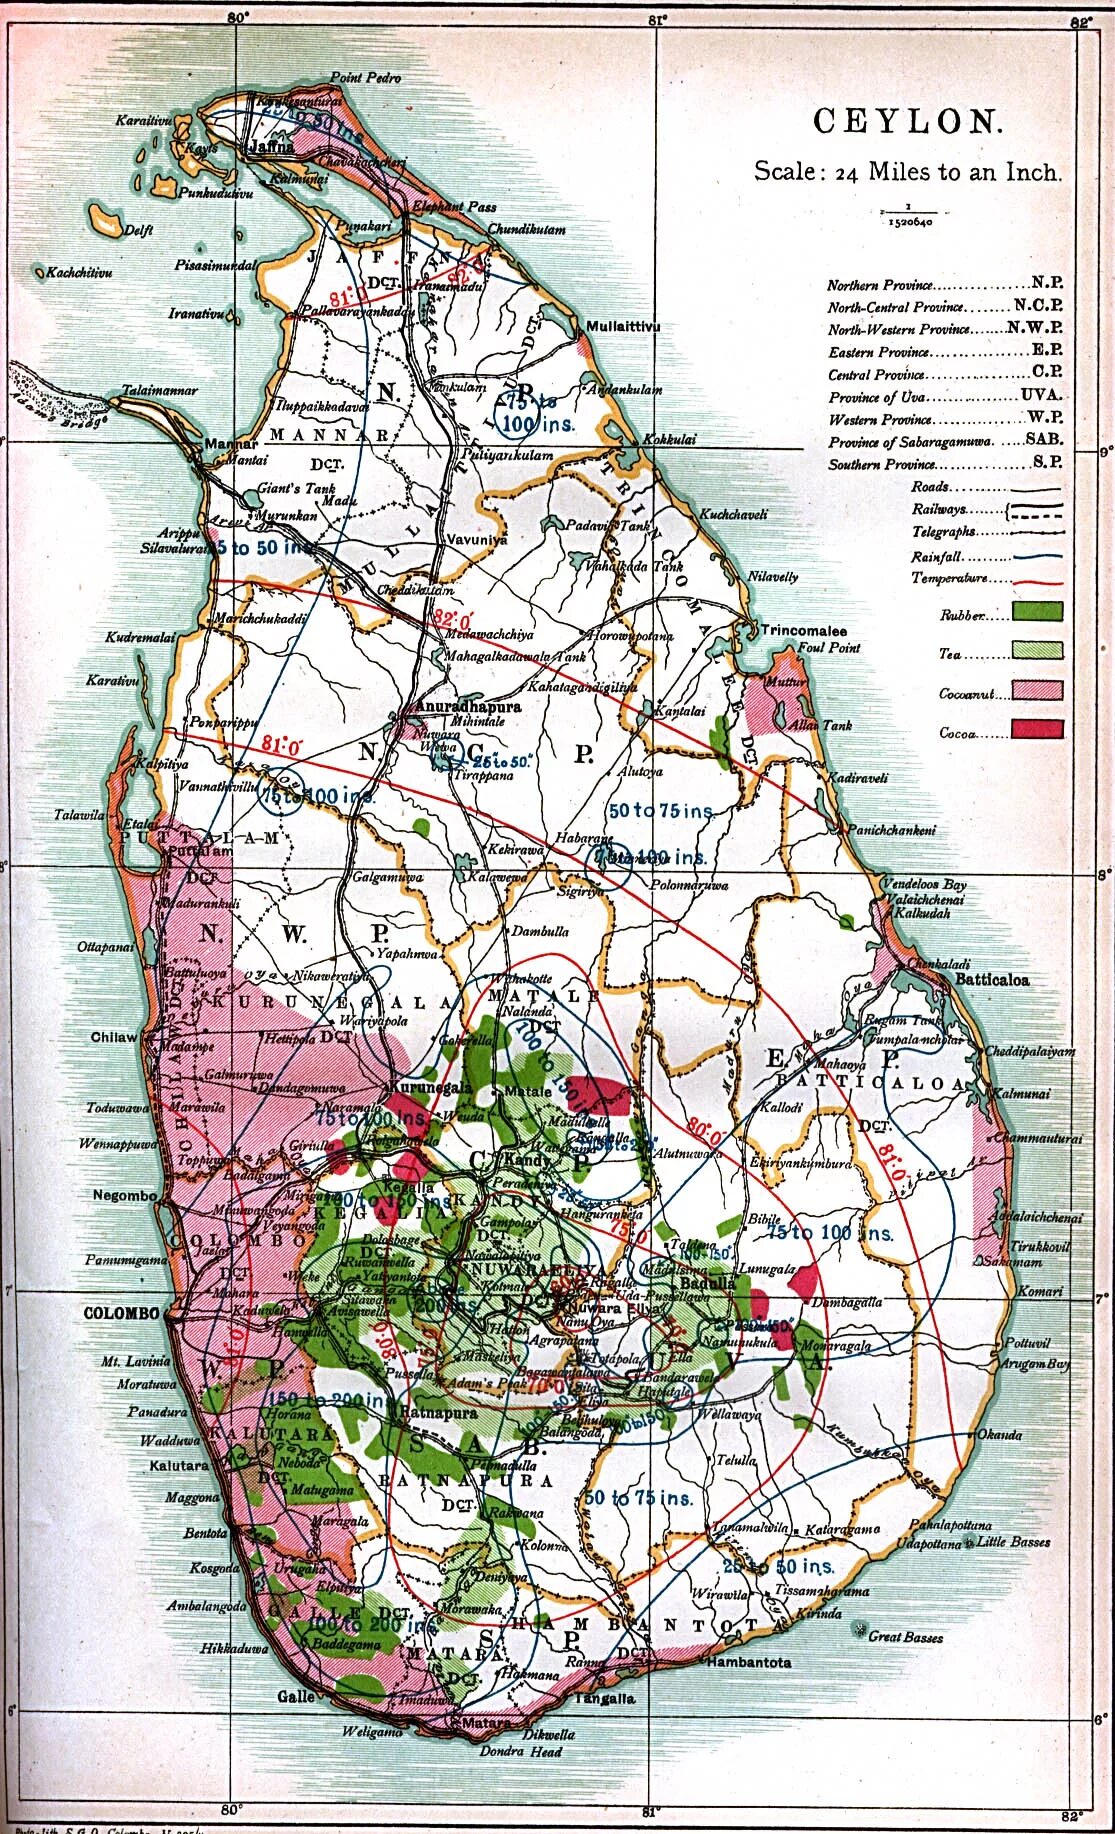 Достопримечательности шри ланки на карте. Шри Ланка на карте. Шри Ланка Цейлон на карте. Геология Шри Ланки. Остров Цейлон на карте.